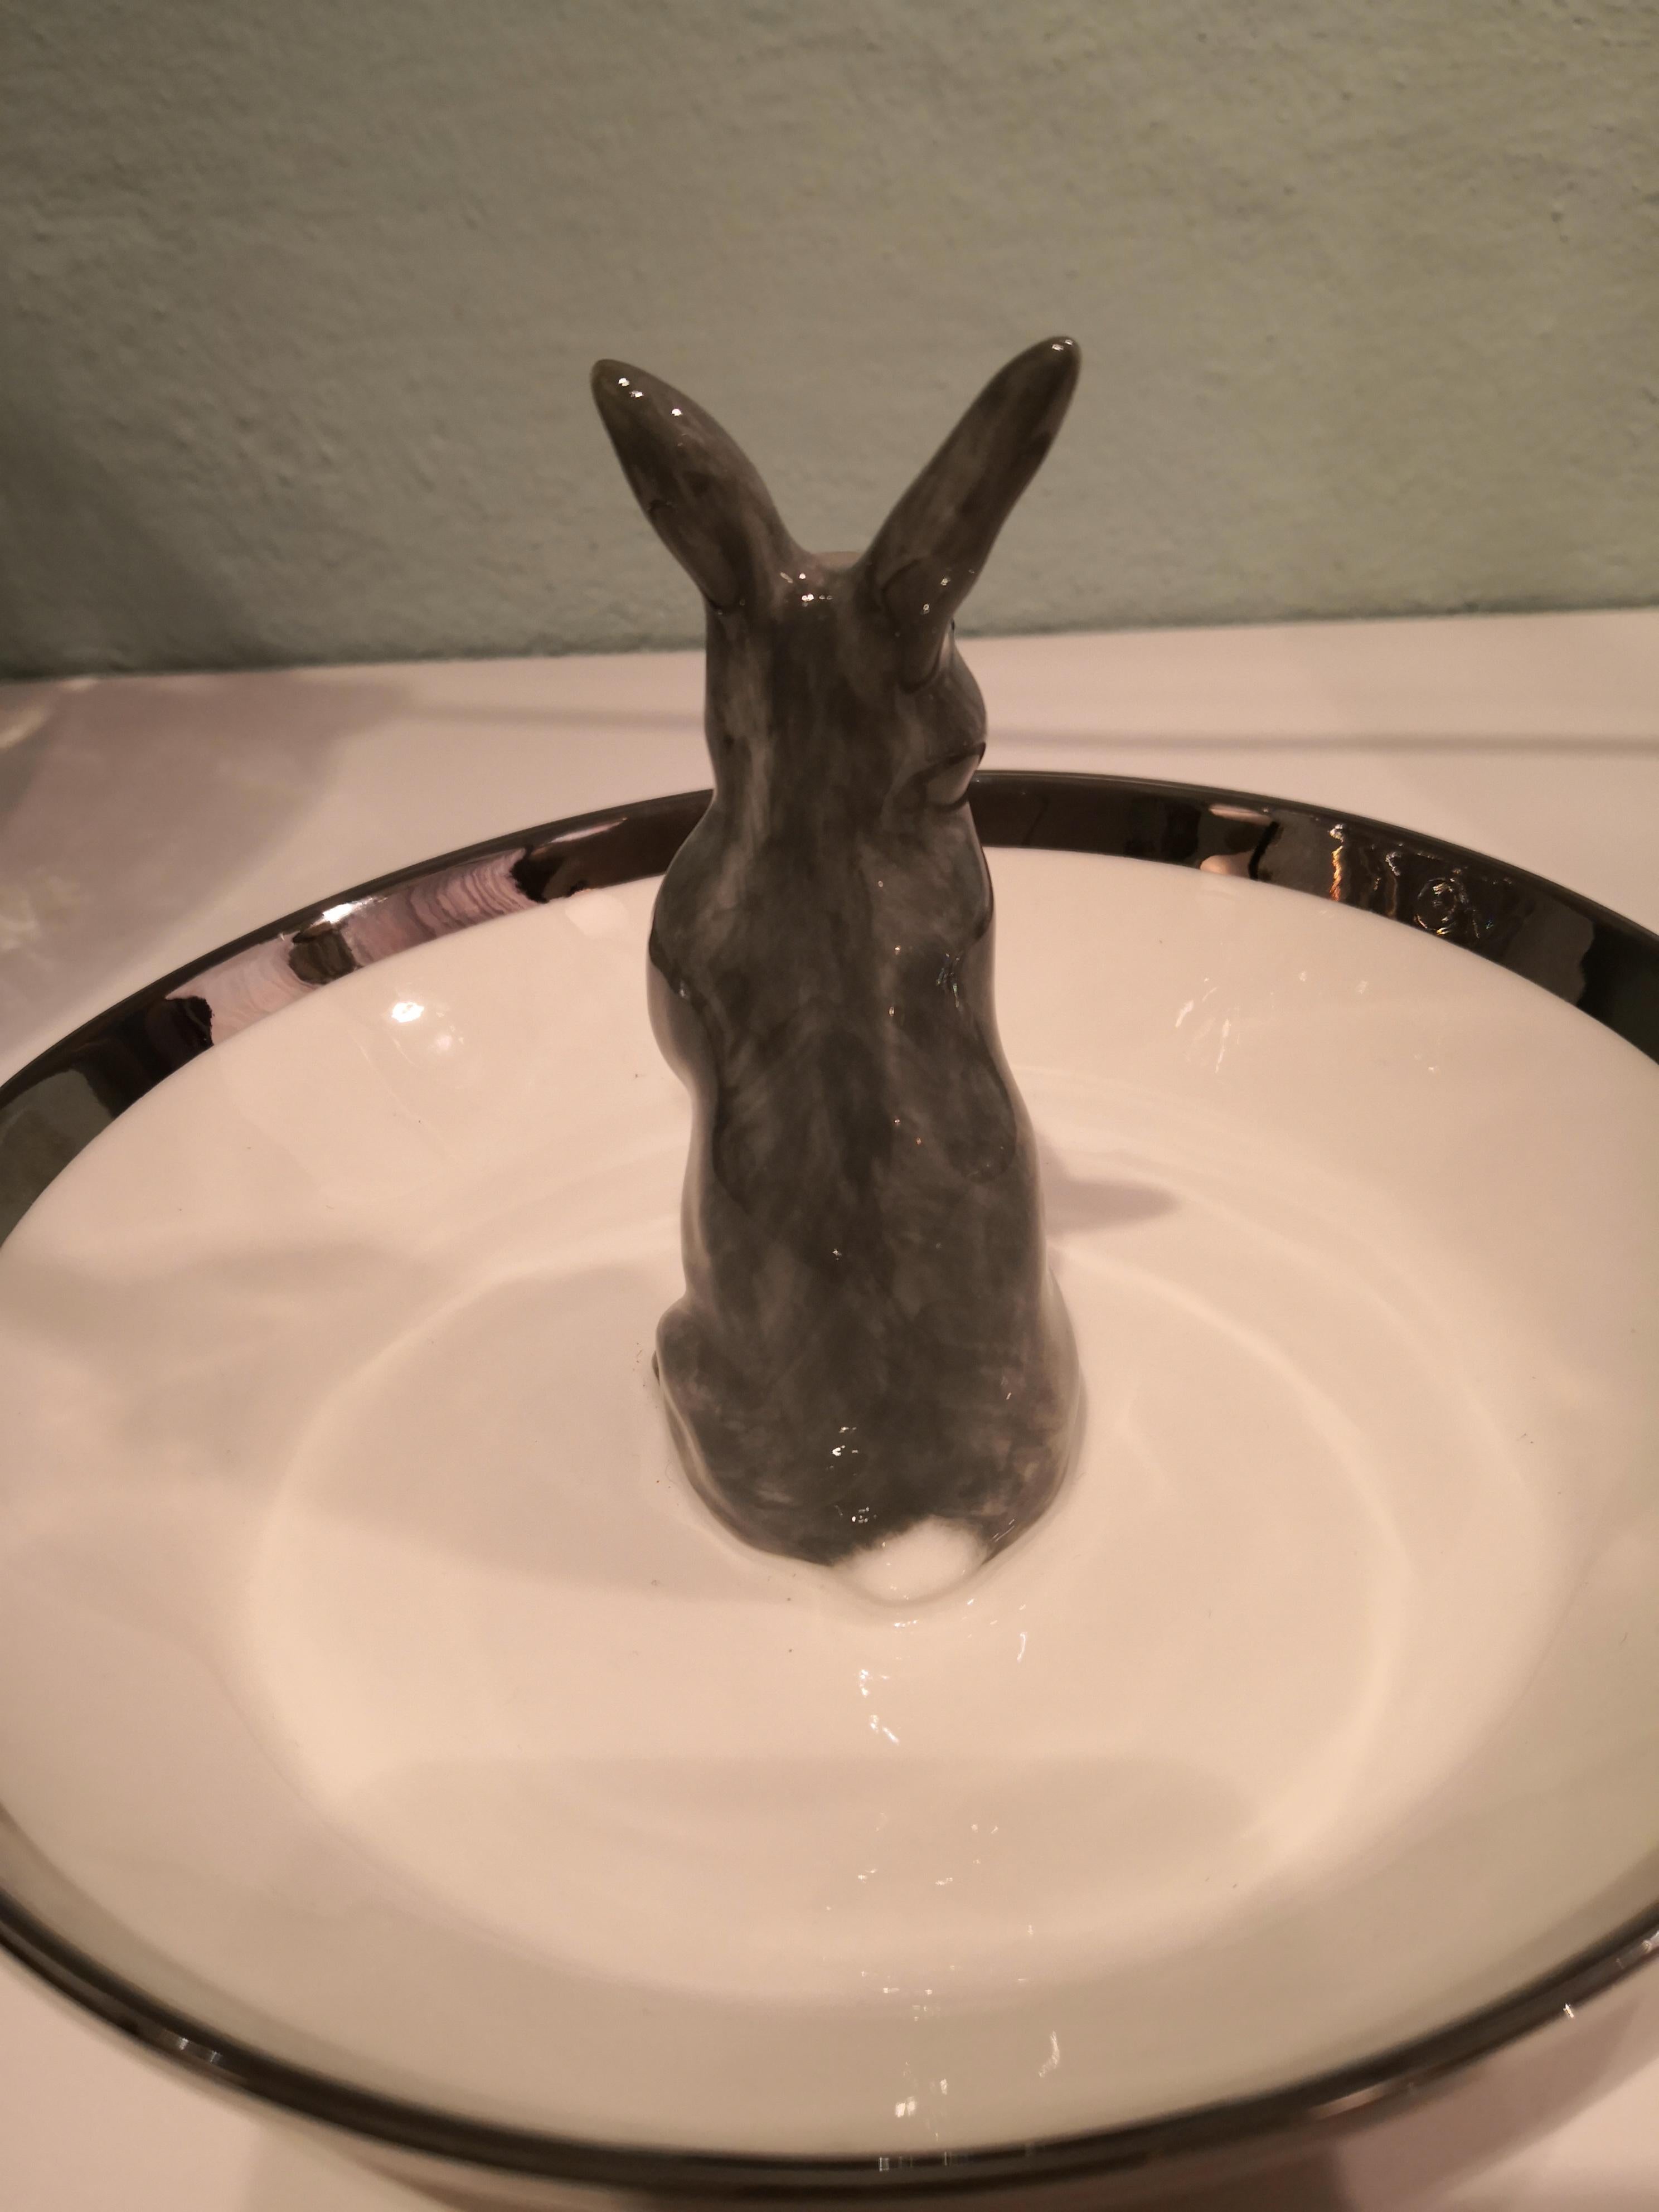 German Porcelain Bowl Hand Painted with Rabbit Figure Sofina Boutique Kitzbuehel